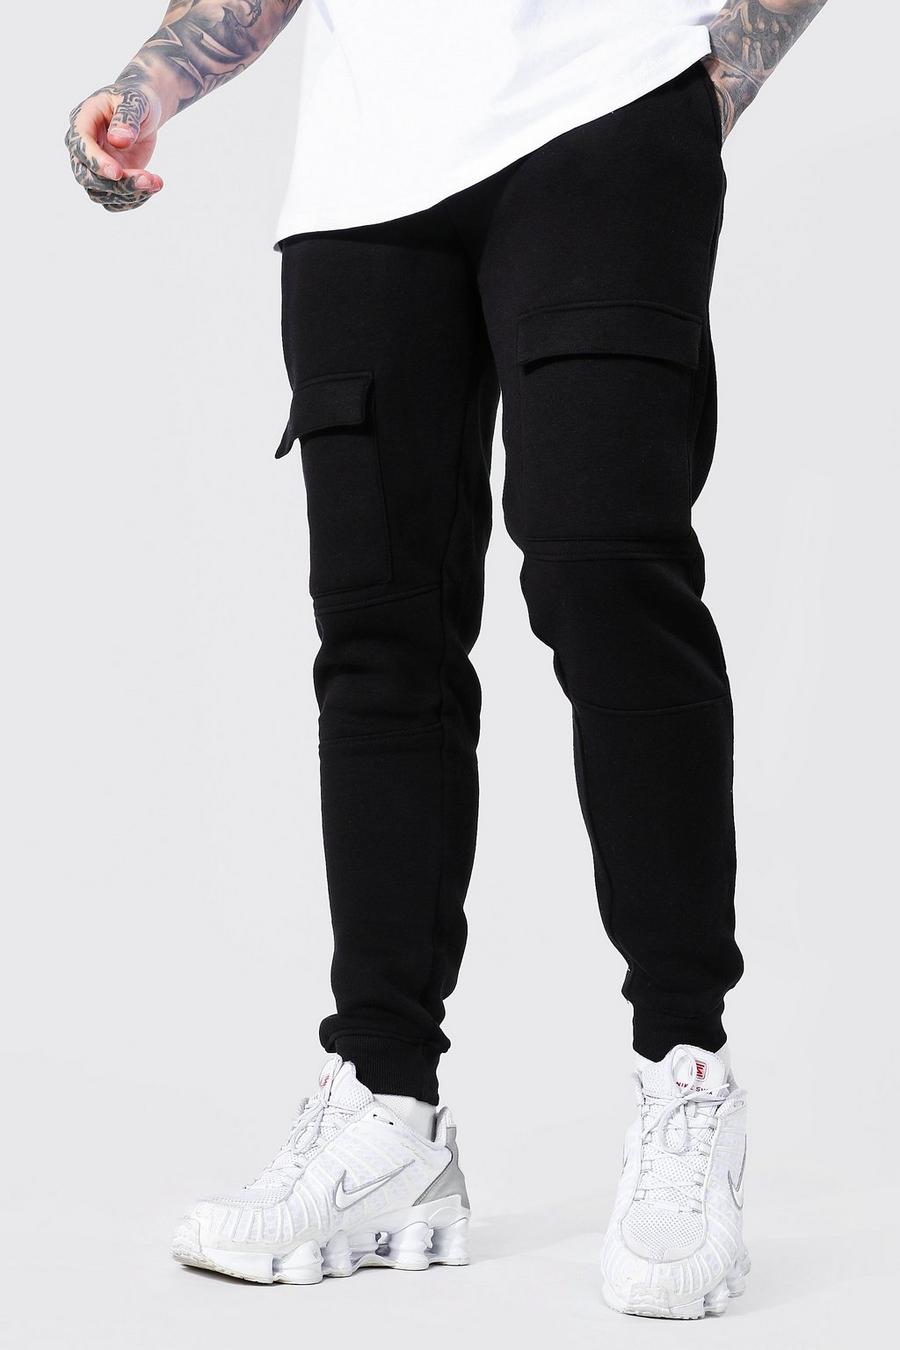 Pantaloni tuta Slim Fit stile Cargo con tasche e pannelli, Black nero